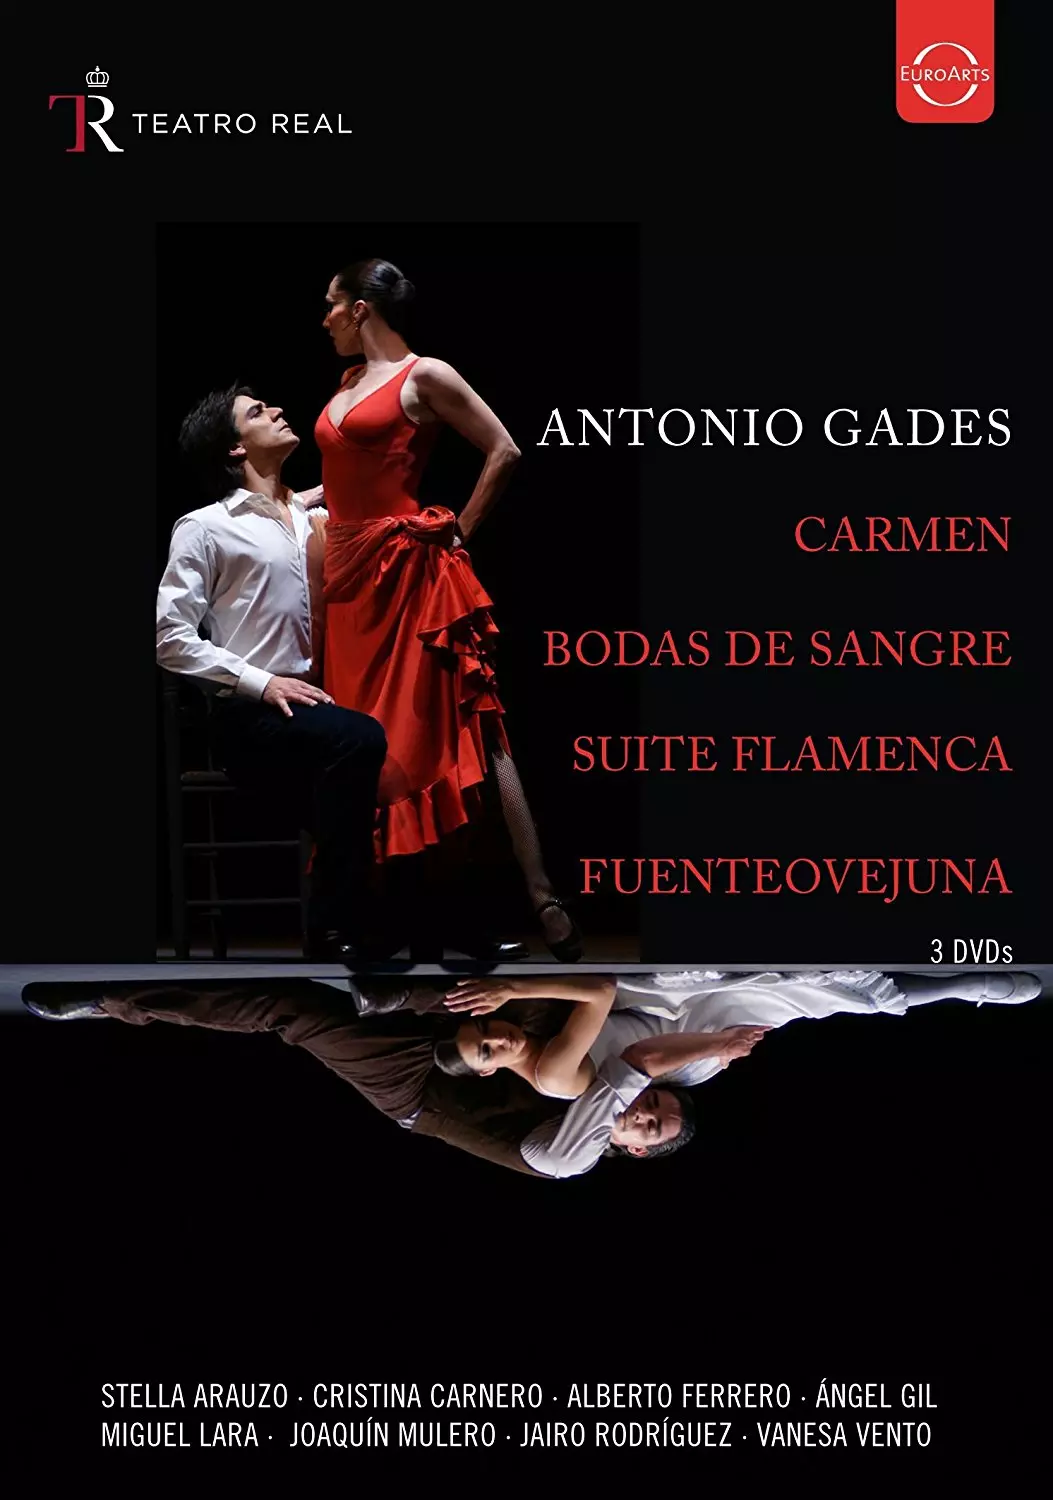 Antonio Gades - Spanish Dances from Teatro Real